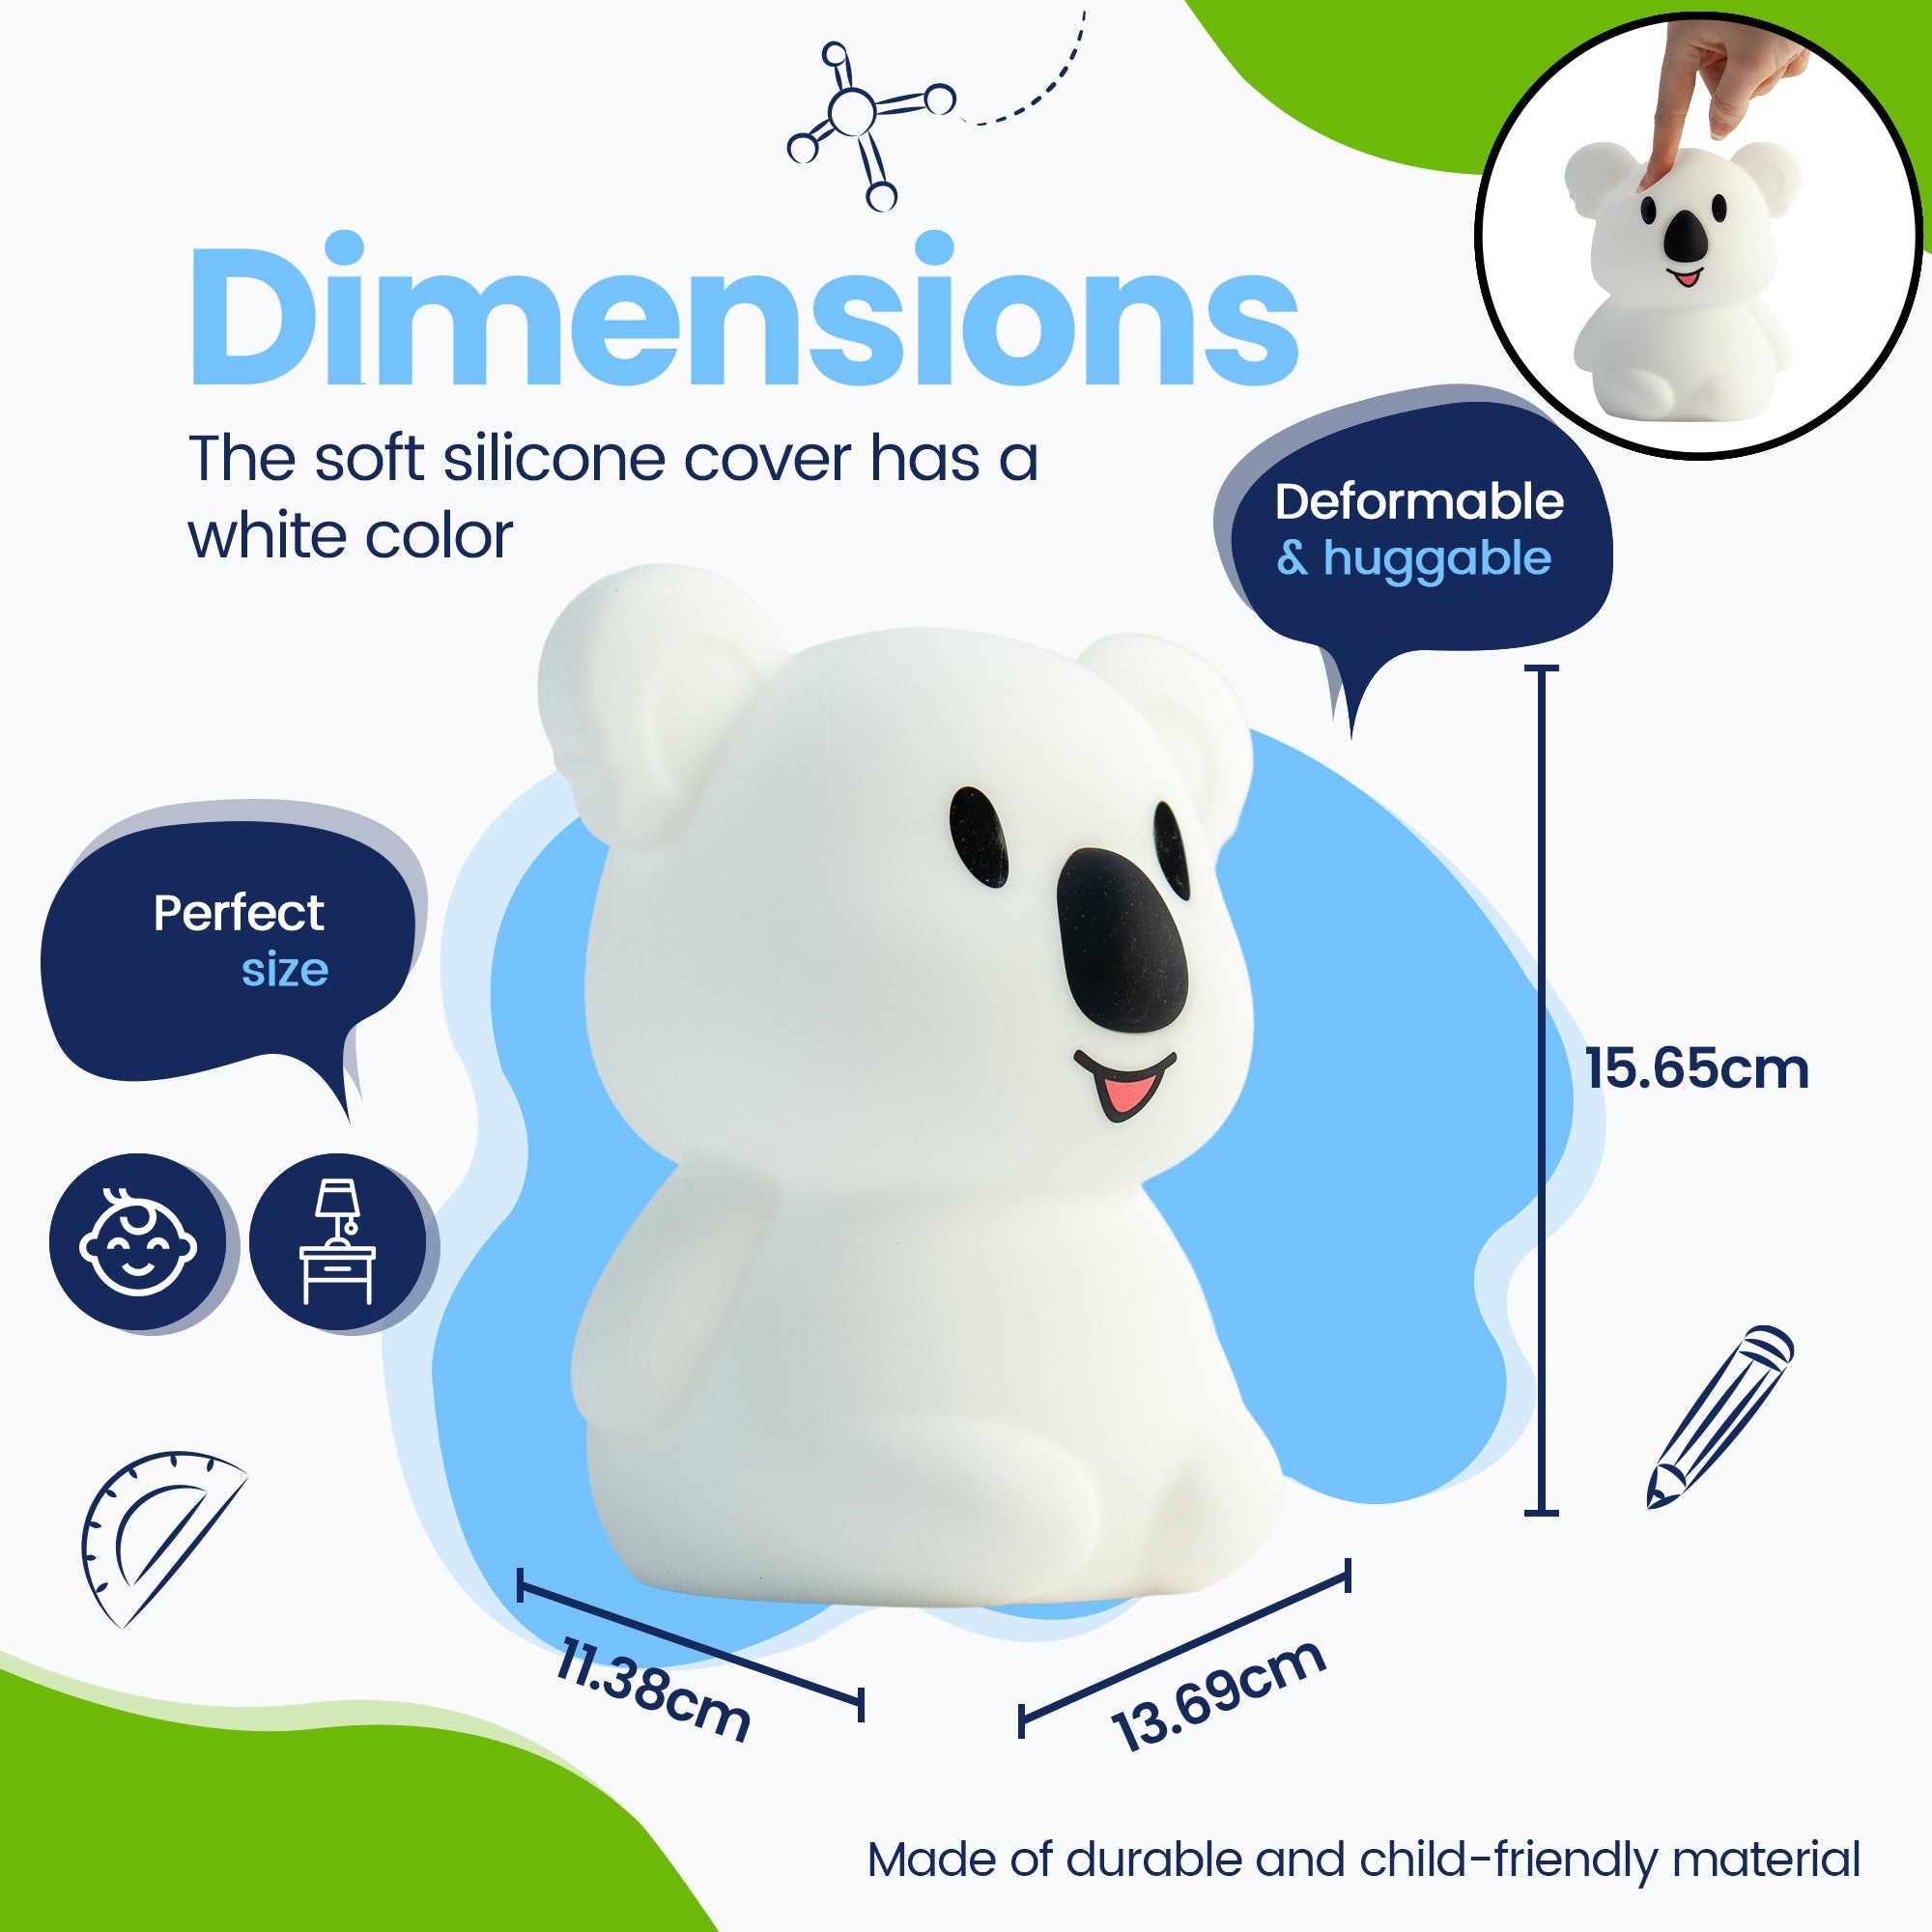 Dimensioner Koala Natlampe - Perfekt størrelse - Premium Design - Silikoneovertrækket er hvidt i farven